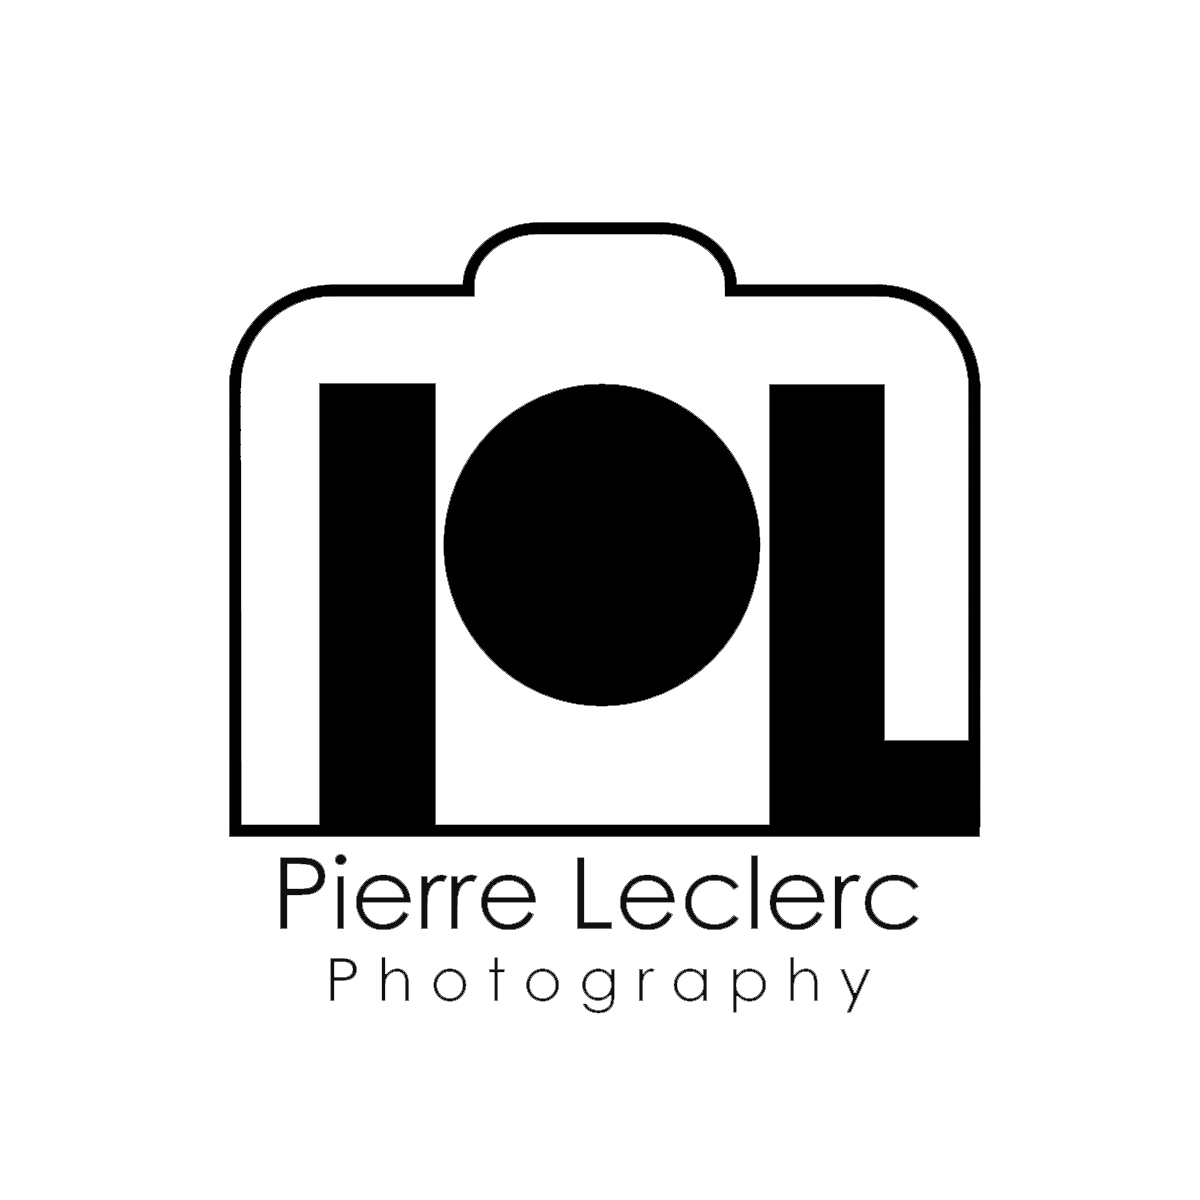 Pierre Leclerc Photography